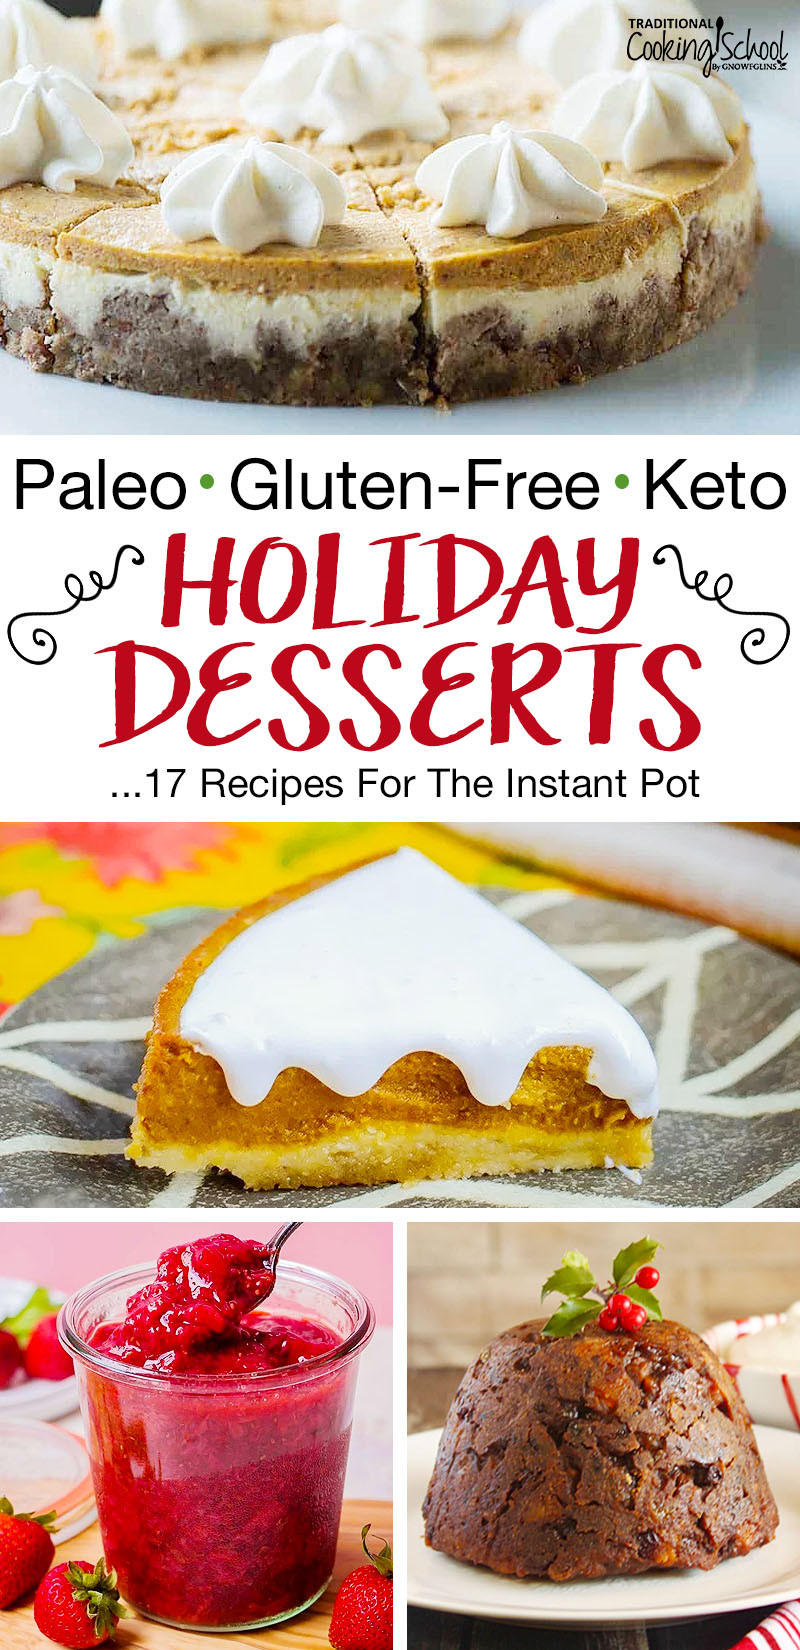 Instant Pot Keto Recipes Desserts
 17 Instant Pot Holiday Desserts Paleo Gluten Free & Keto